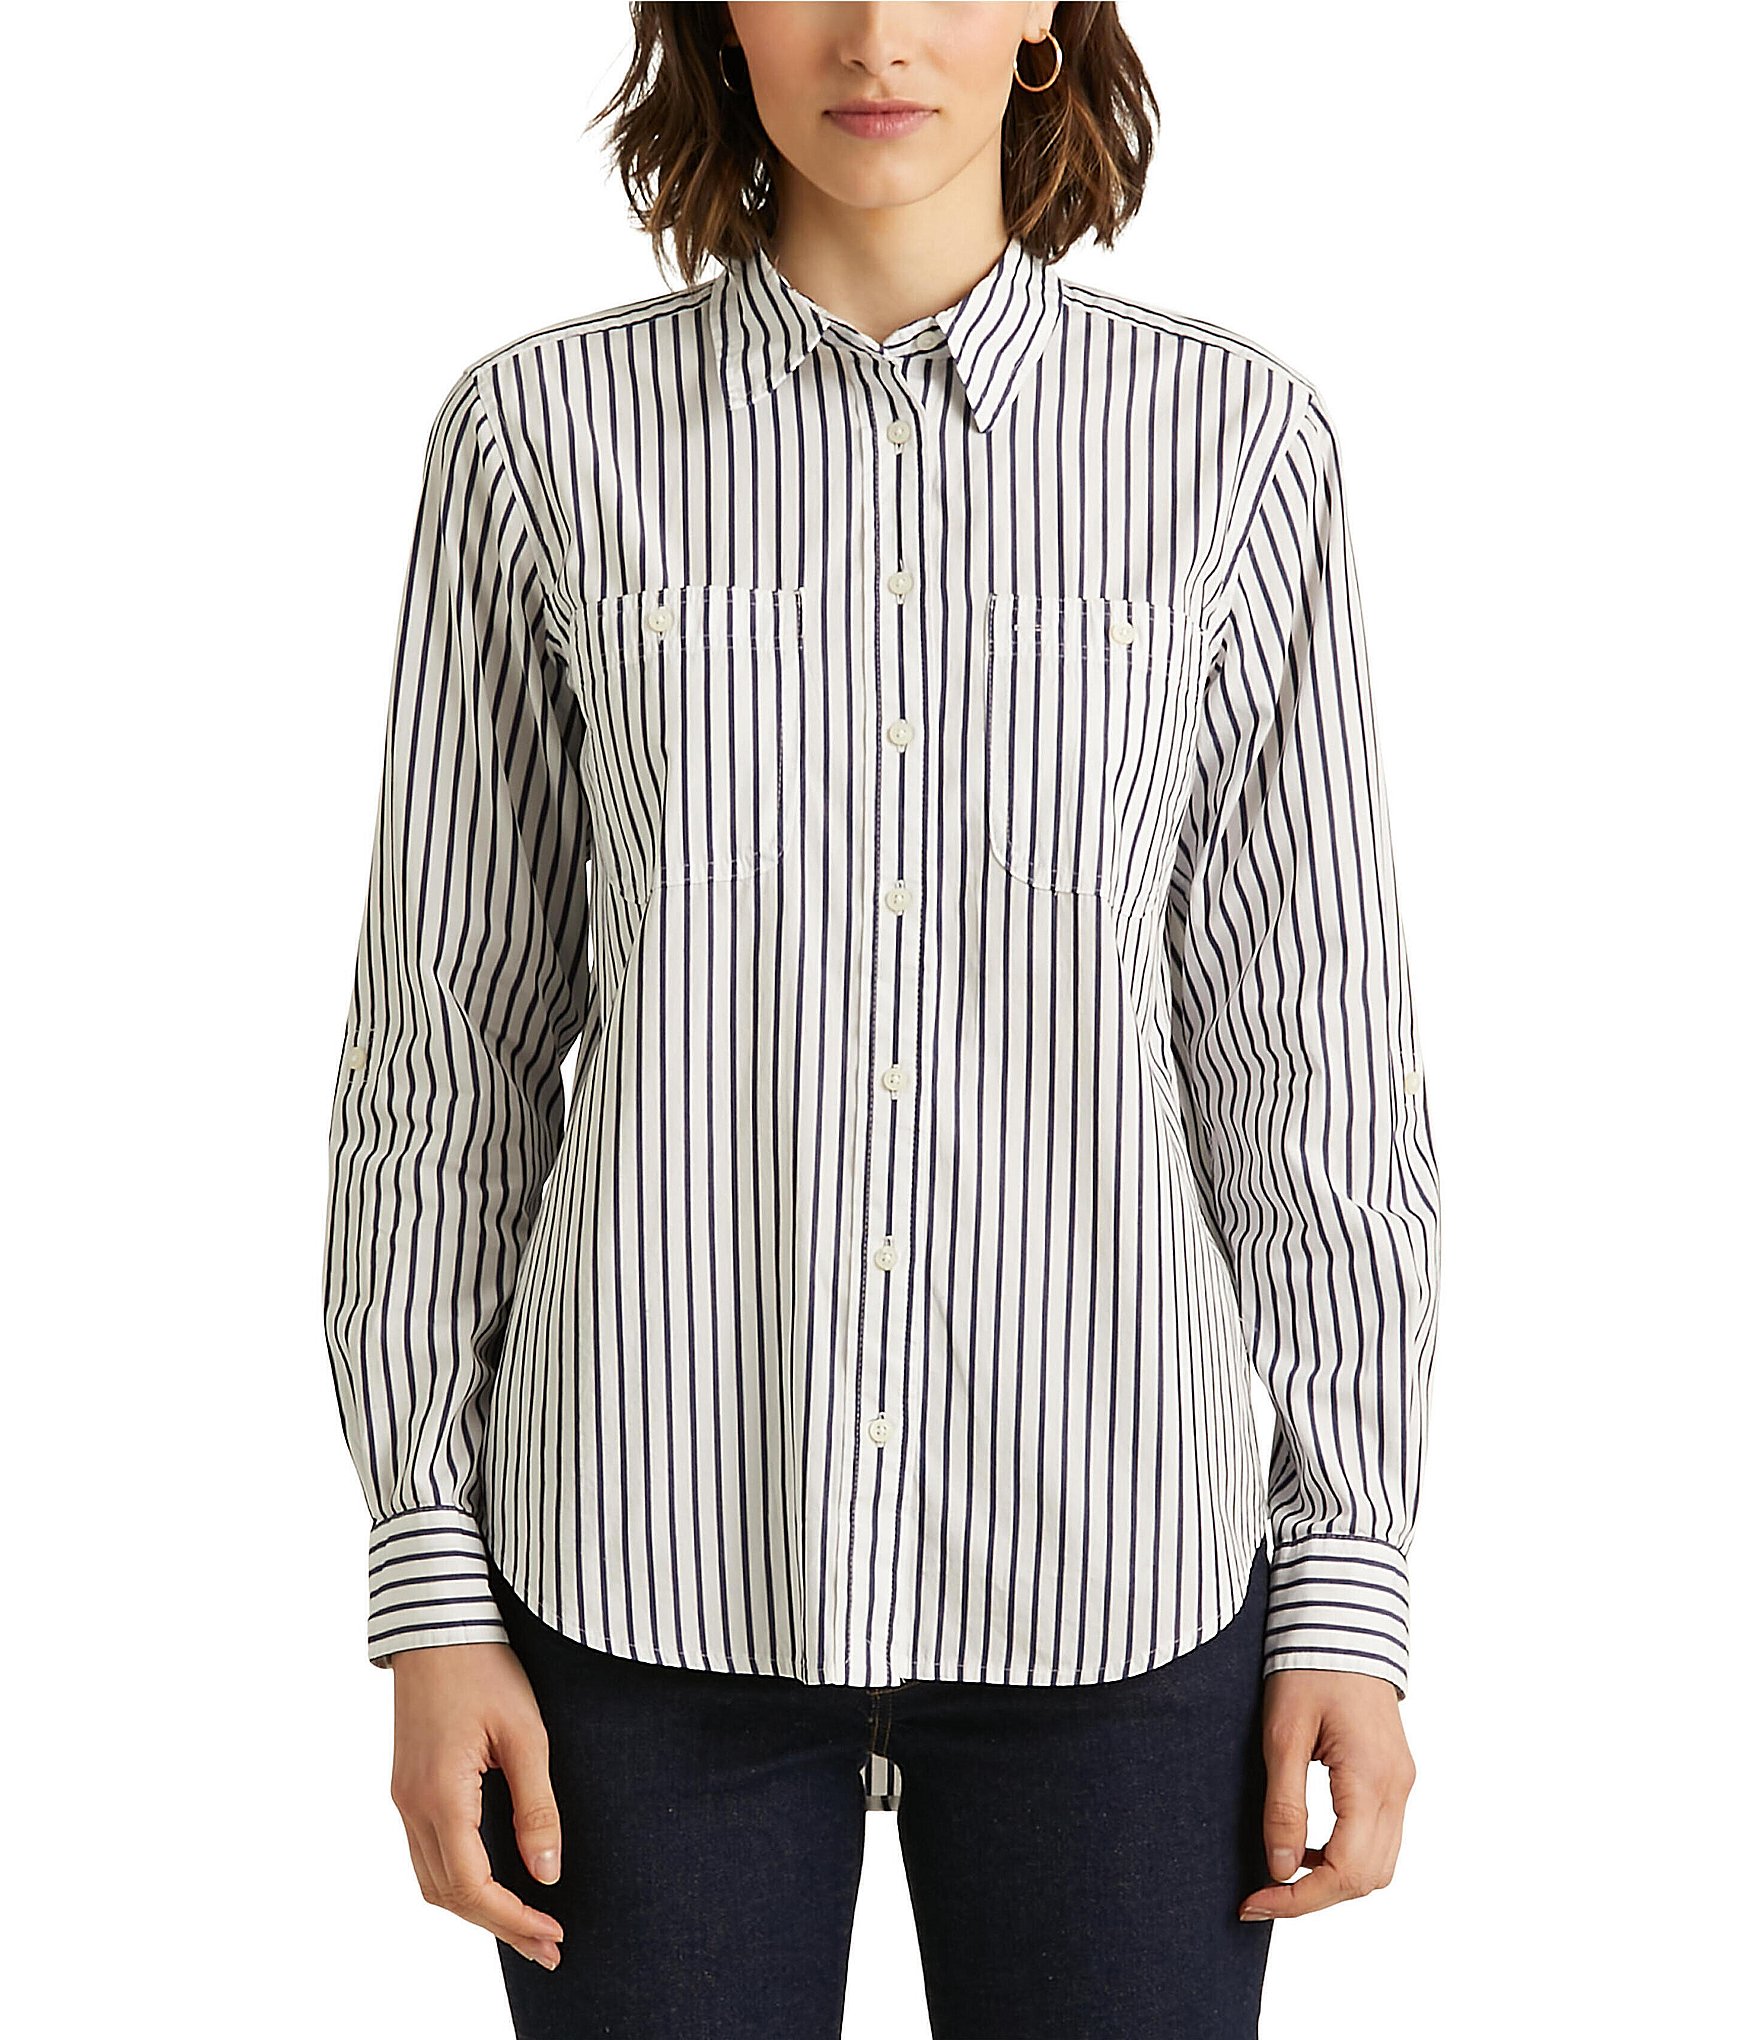 Lauren Ralph Lauren Striped Cotton Shirt - White/Indigo - Size XS